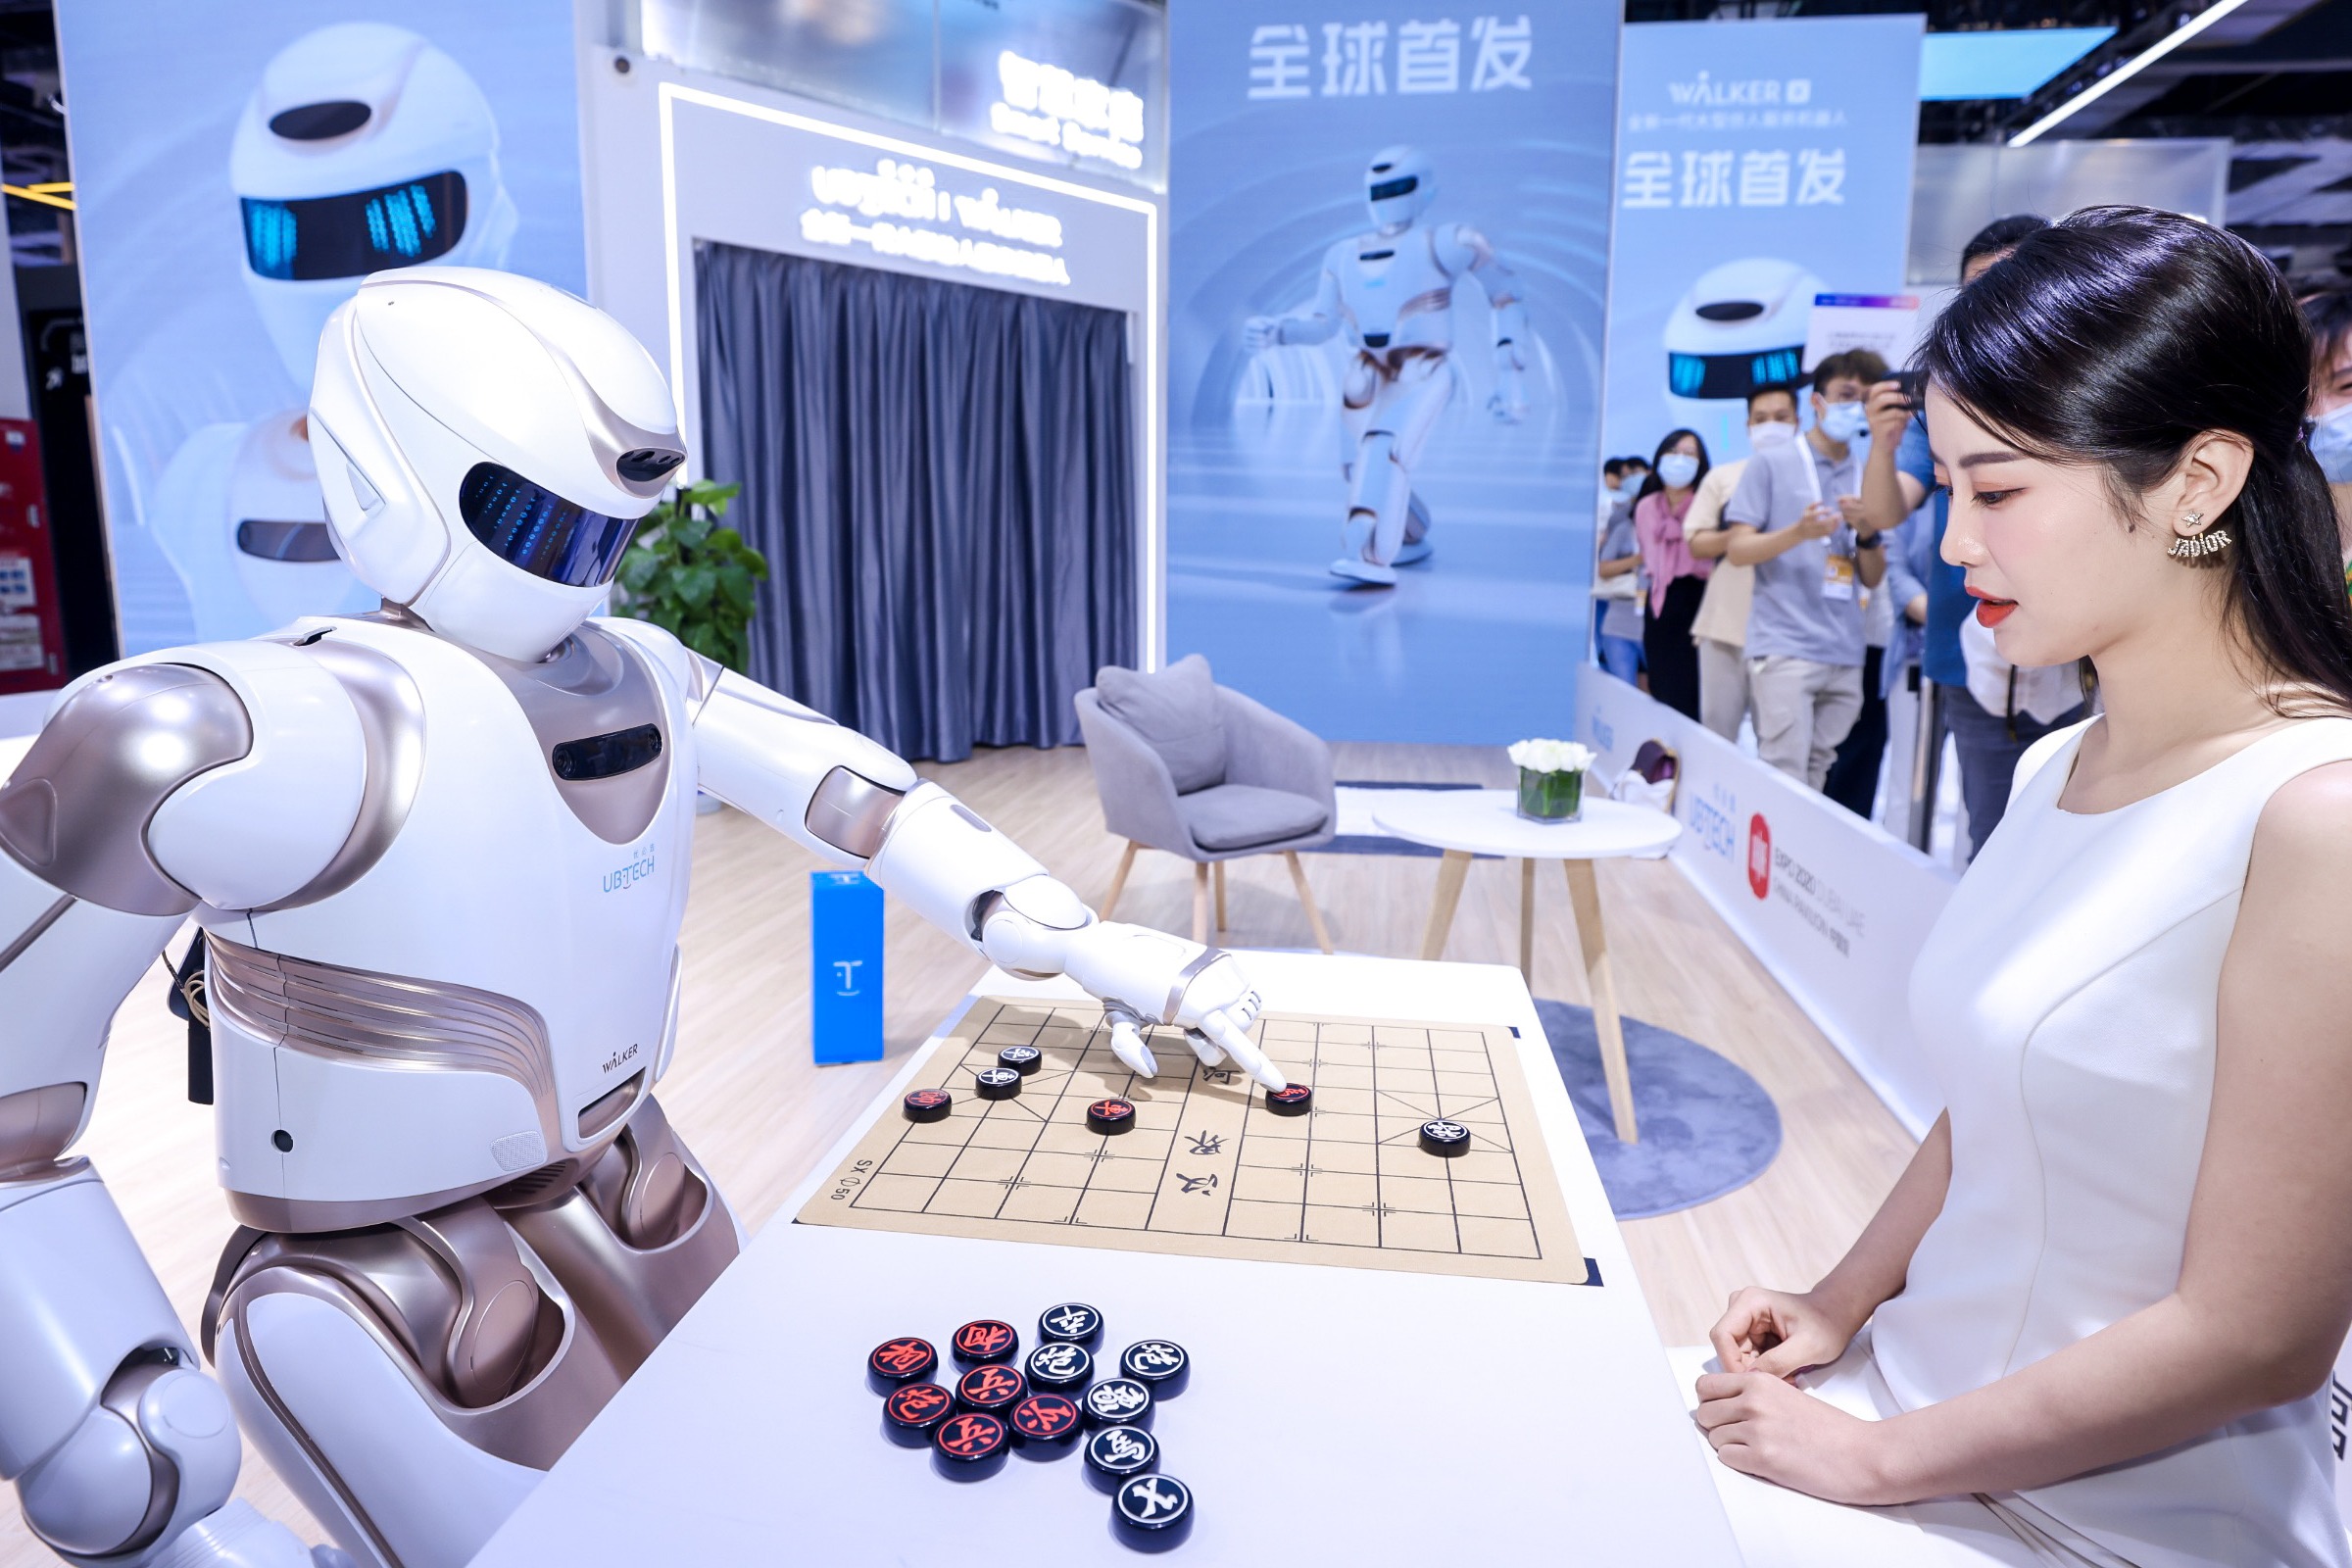 日本的机器人老婆”——天才AI